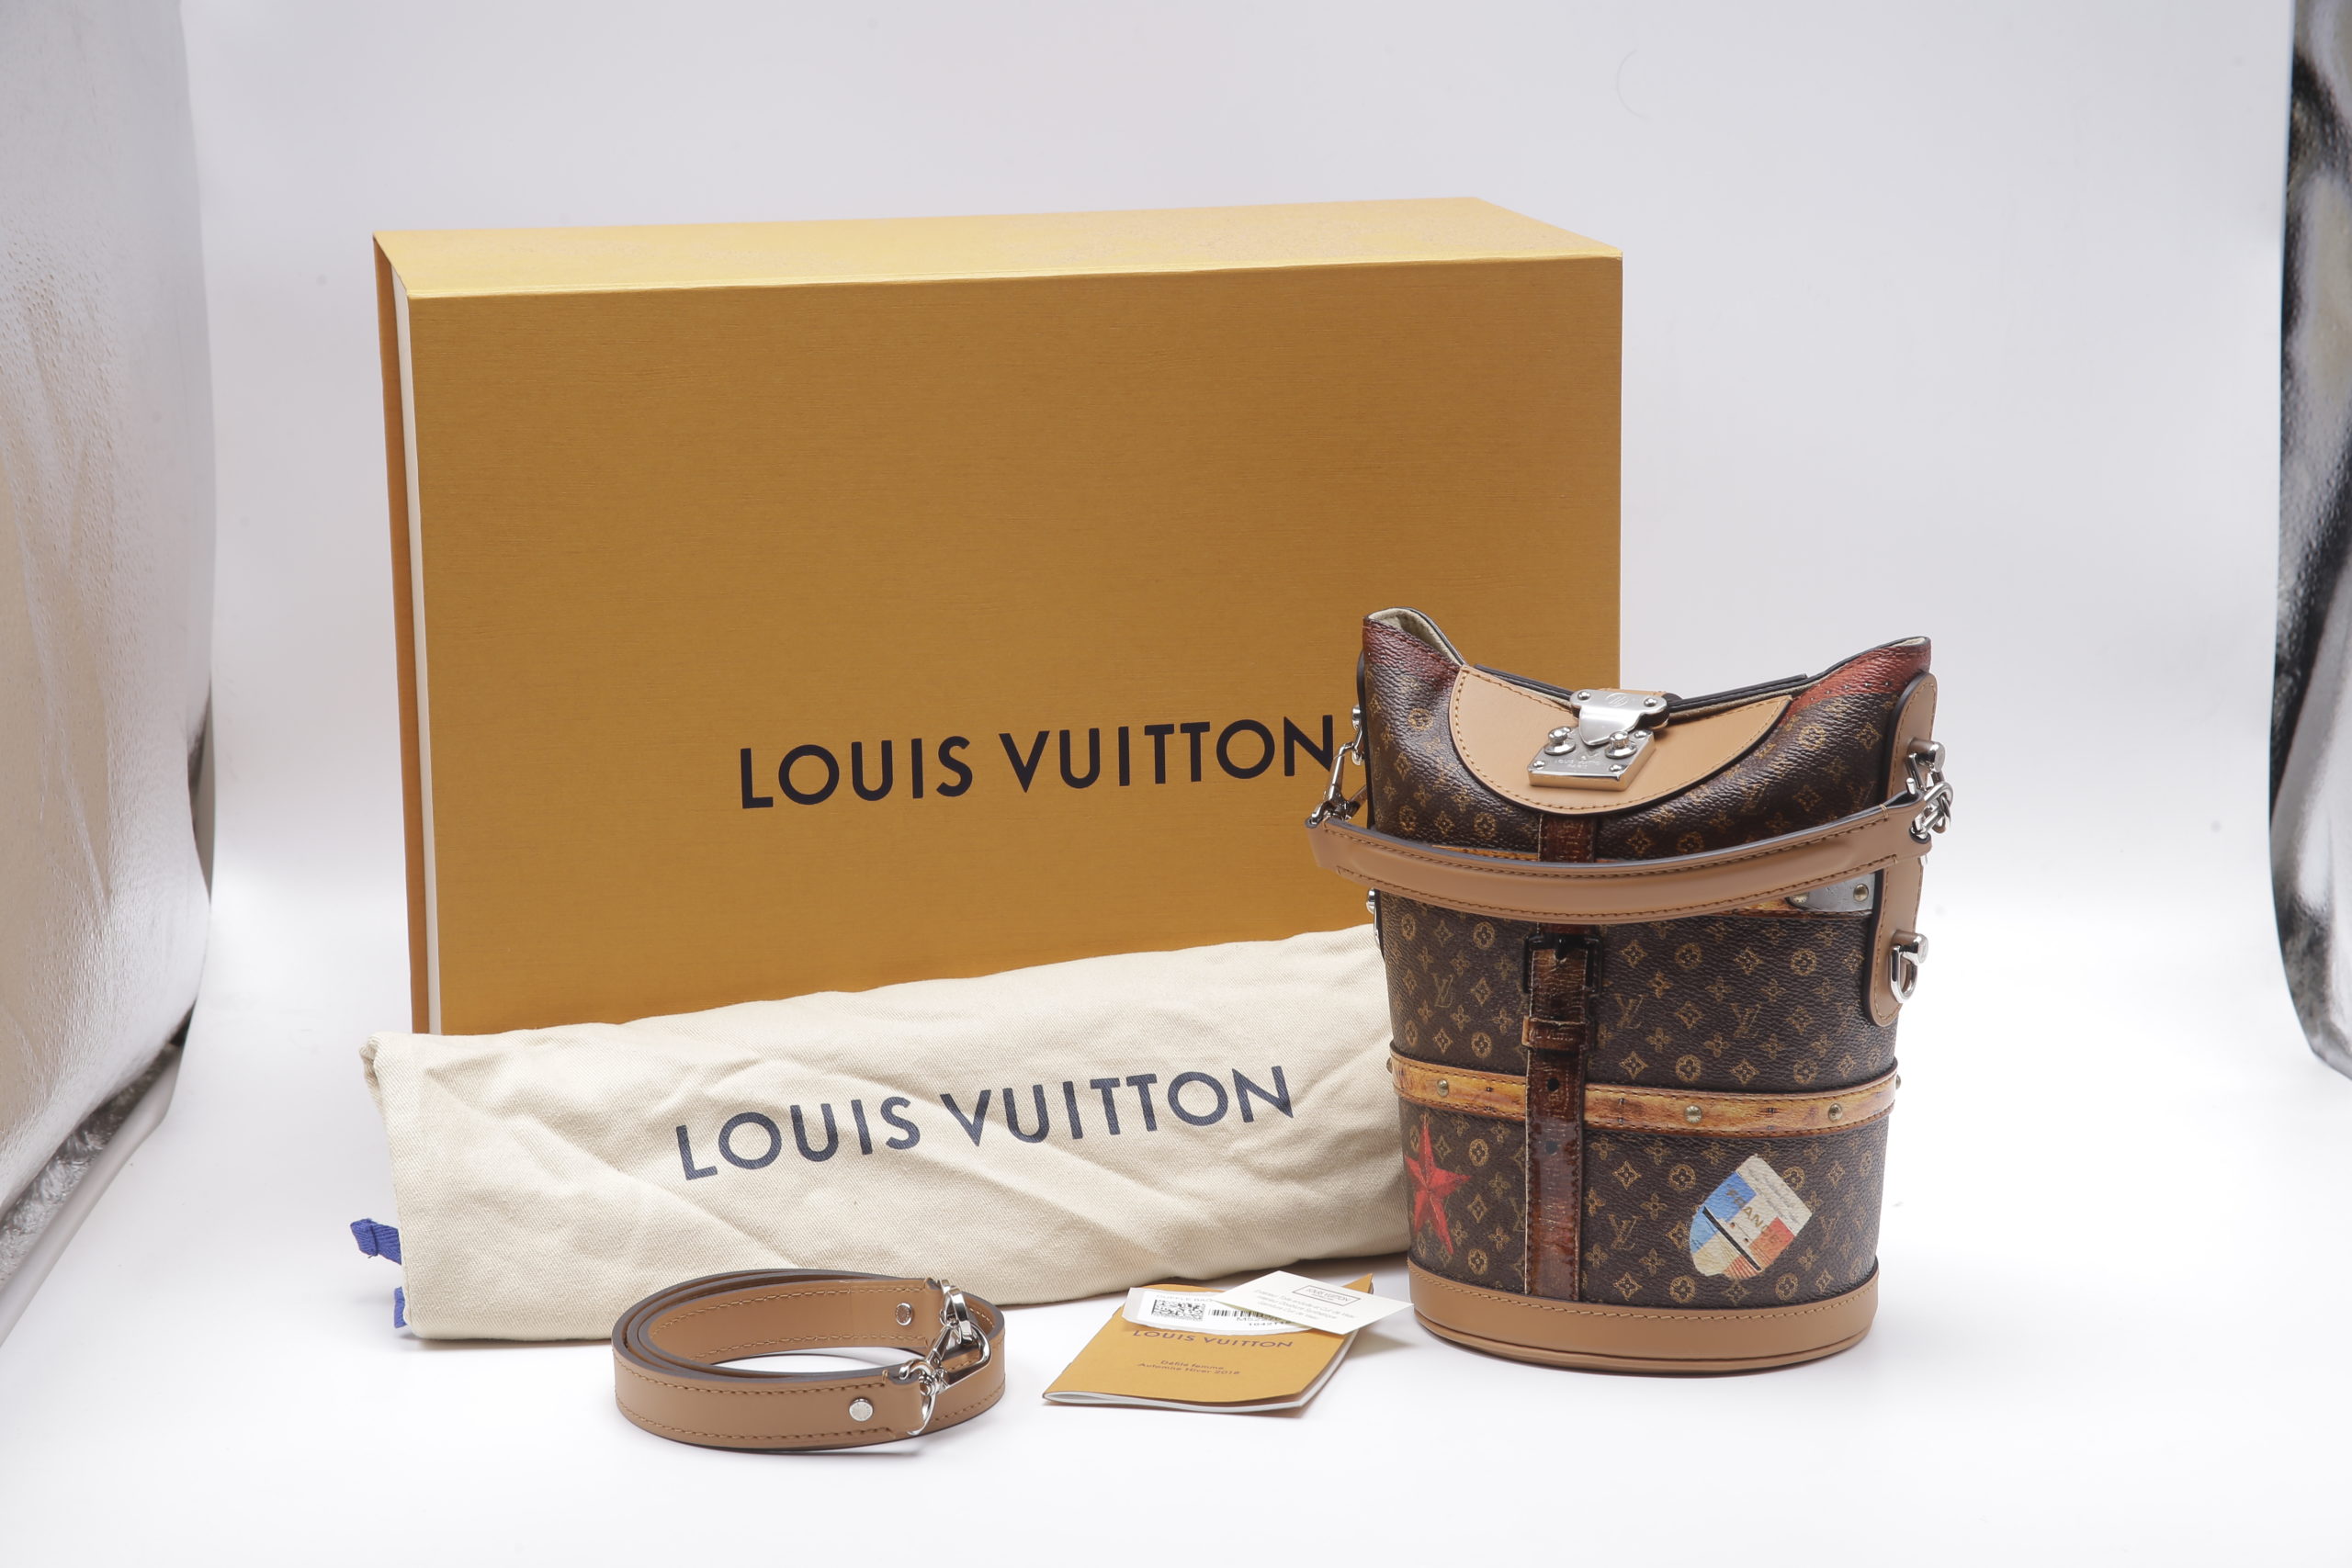 Unboxing Louis Vuitton Giant Reverse Monogram Cannes Bag 2019 